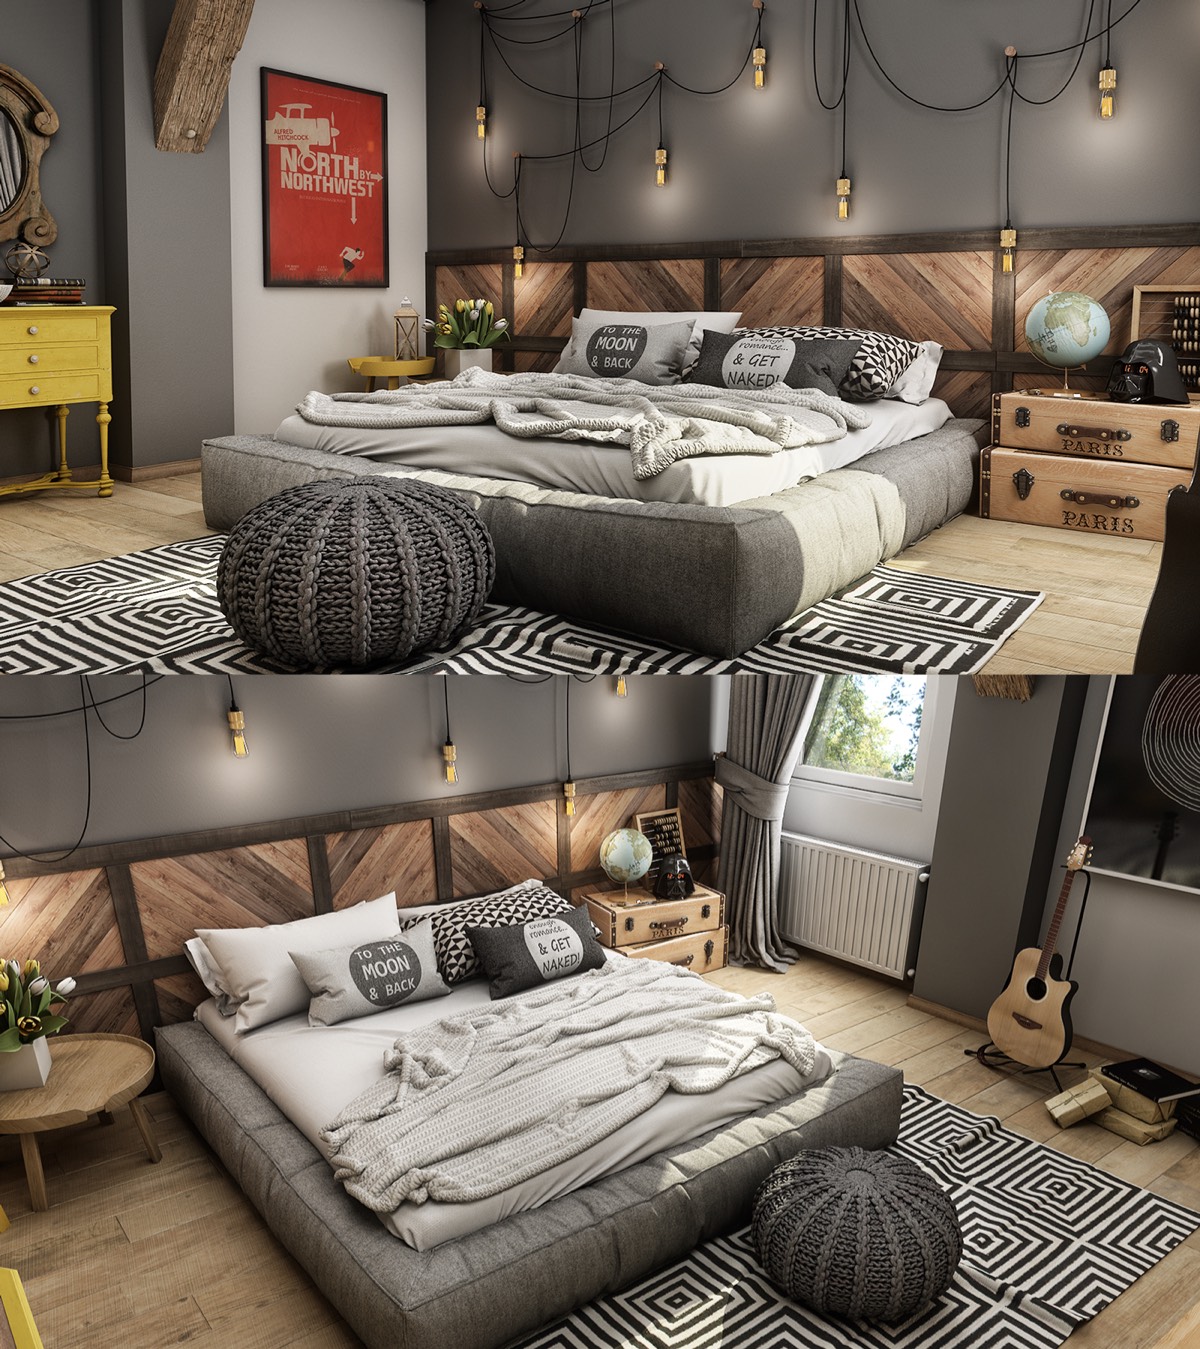 7 bedroom design ideas for teenagers "width =" 1200 "height =" 1349 "srcset =" https://mileray.com/wp-content/uploads/2020/05/1588510606_717_7-Teenage-Bedroom-Design-Ideas-Which-Is-Cool-and-Unique.jpg 1200w, https: // myfashionos .com / wp-content / uploads / 2016/06 / Mario-Stoica-267x300.jpg 267w, https://mileray.com/wp-content/uploads/2016/06/Mario-Stoica-768x863.jpg 768w, https: //mileray.com/wp-content/uploads/2016/06/Mario-Stoica-911x1024.jpg 911w, https://mileray.com/wp-content/uploads/2016/06/Mario-Stoica-696x782 . jpg 696w, https://mileray.com/wp-content/uploads/2016/06/Mario-Stoica-1068x1201.jpg 1068w, https://mileray.com/wp-content/uploads/2016/06/Mario- Stoica-374x420.jpg 374w "sizes =" (maximum width: 1200px) 100vw, 1200px